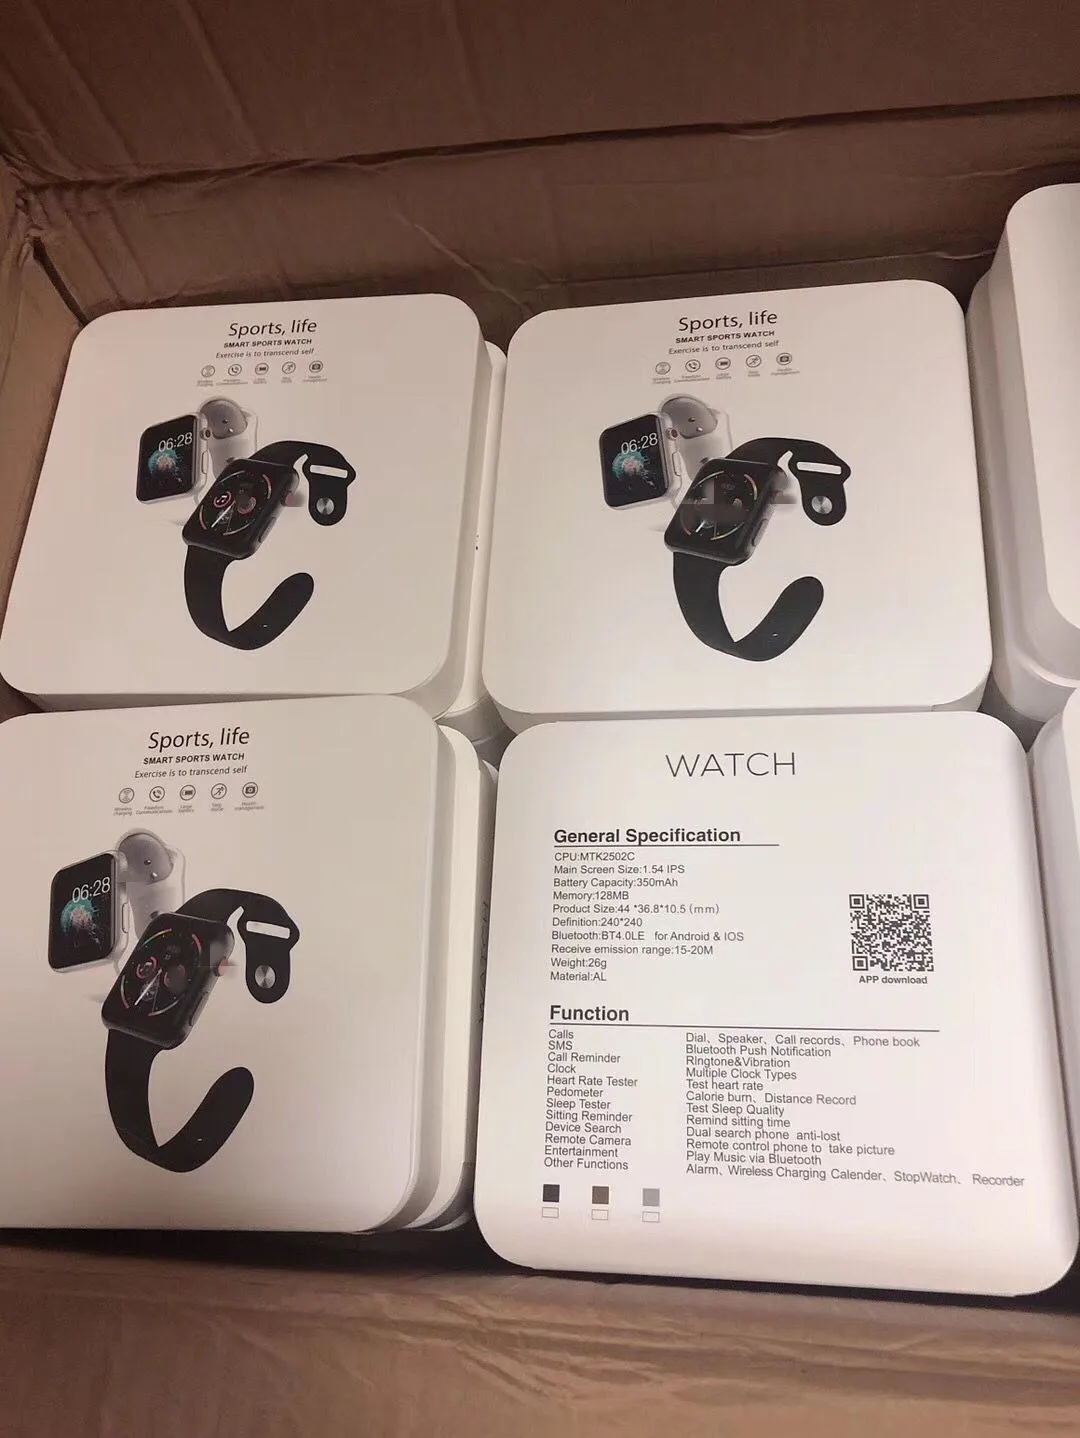 IWO 10 Bluetooth Смарт-часы серии 4 1:1 IWO 8 Plus IWO 9 обновленный gps трекер спортивные Смарт-часы для Apple iPhone Android